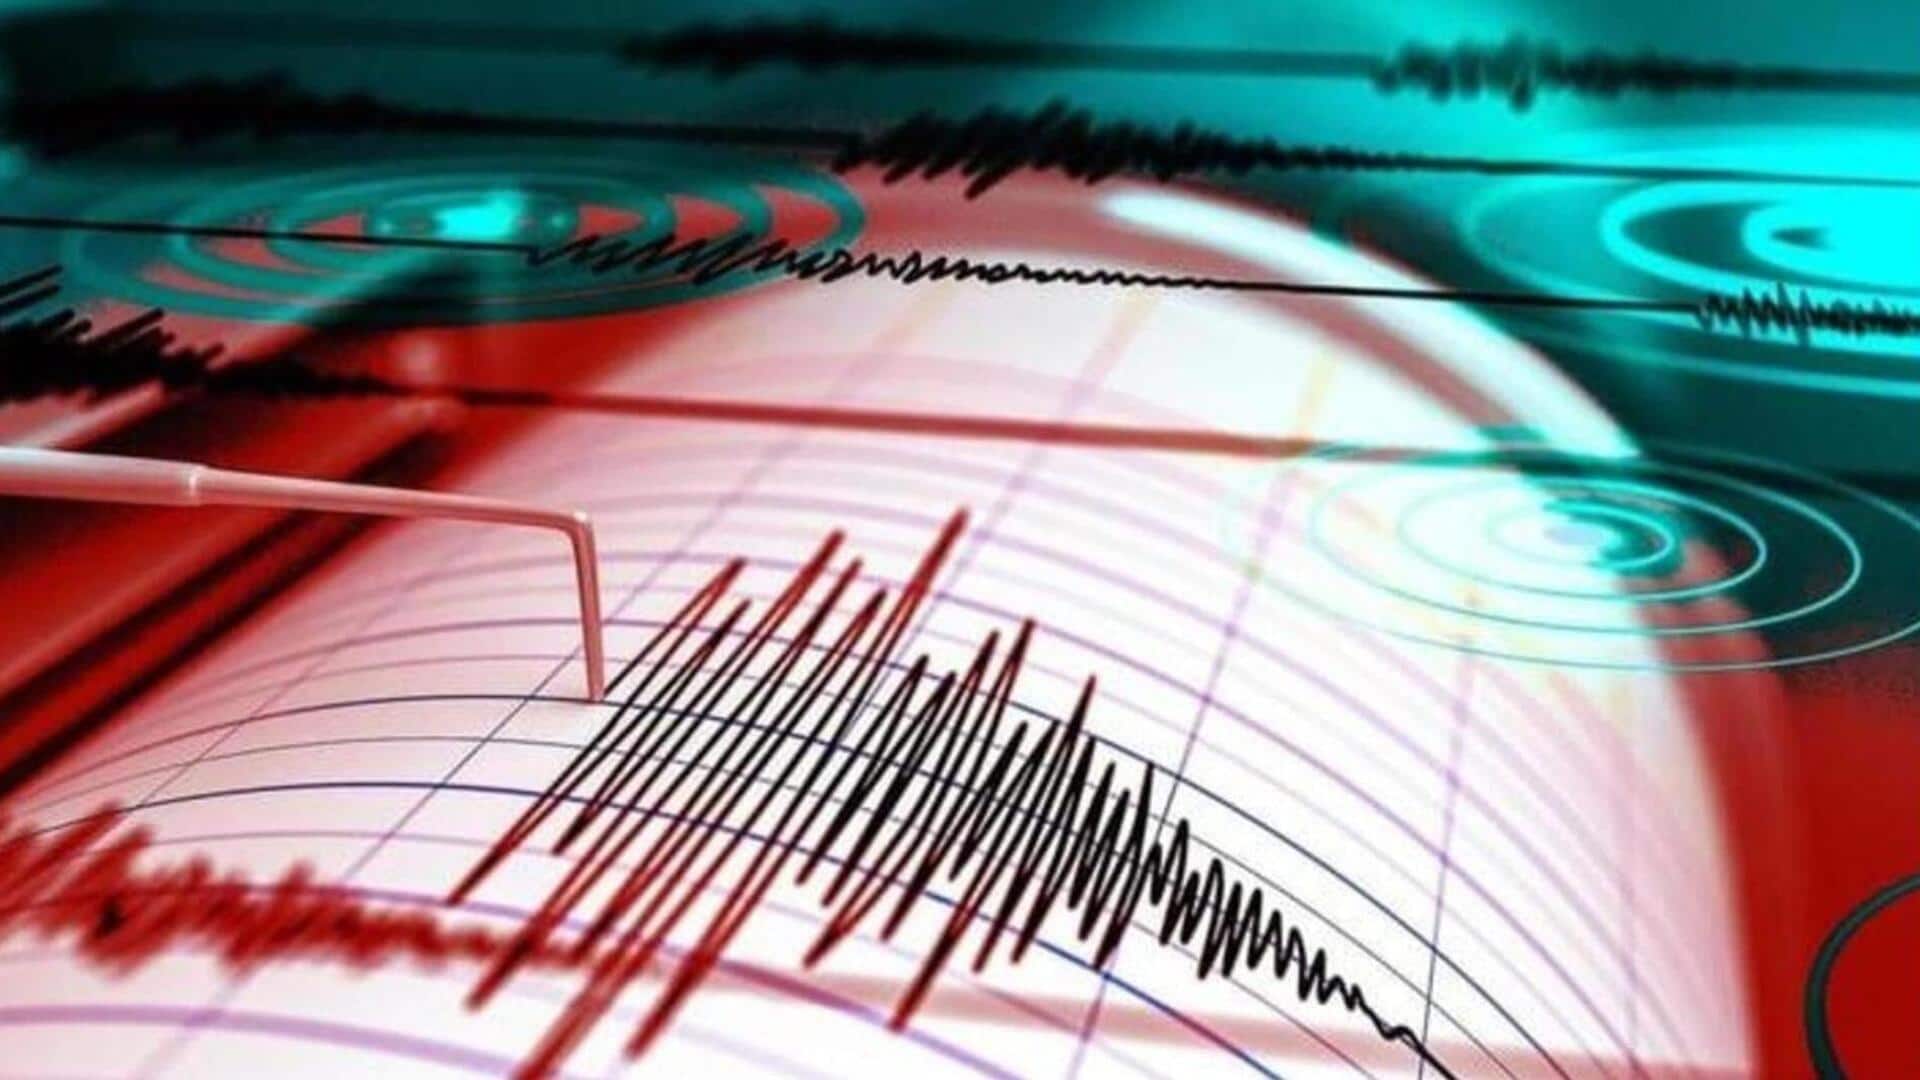 उत्तराखंड के पिथौरागढ़ में लगे भूकंप के झटके, 4.0 मापी गई तीव्रता